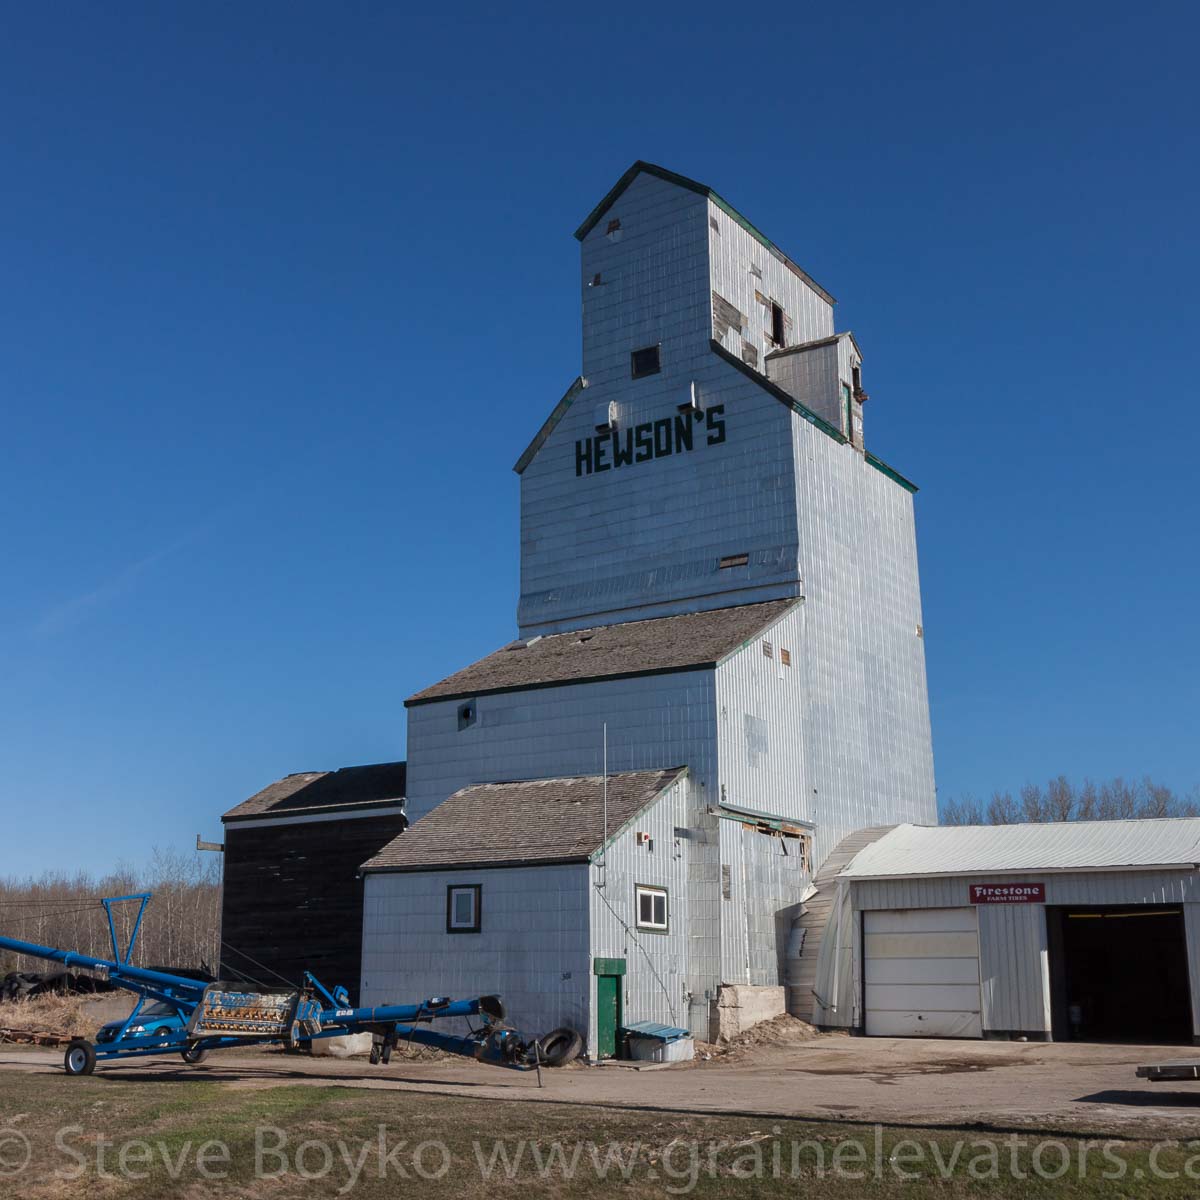 The Angusville, Manitoba grain elevator. April 2016.